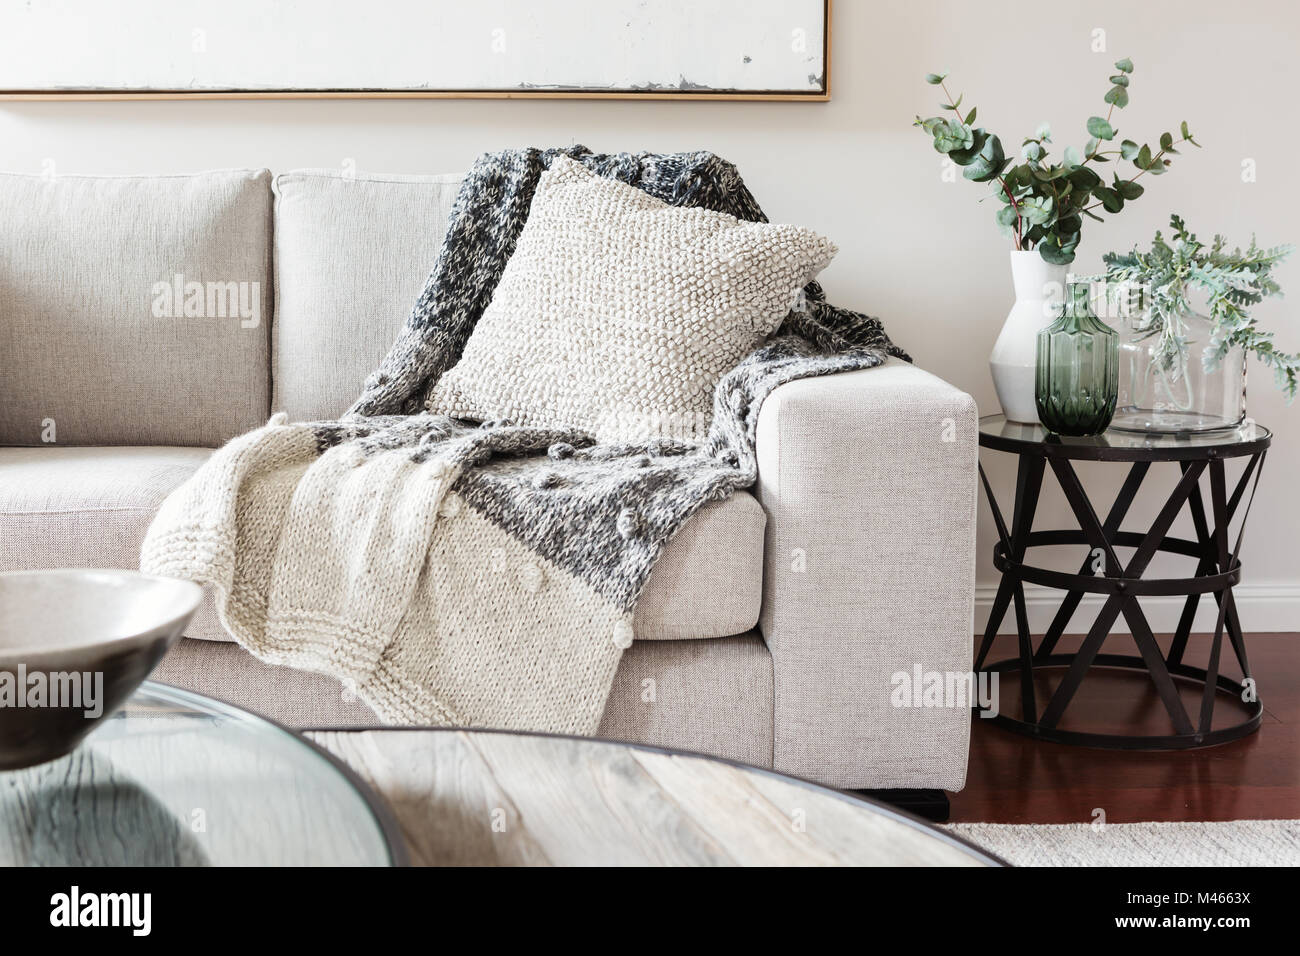 Textured strati interni del cuscino divano dn buttare in neutrale colori Foto Stock